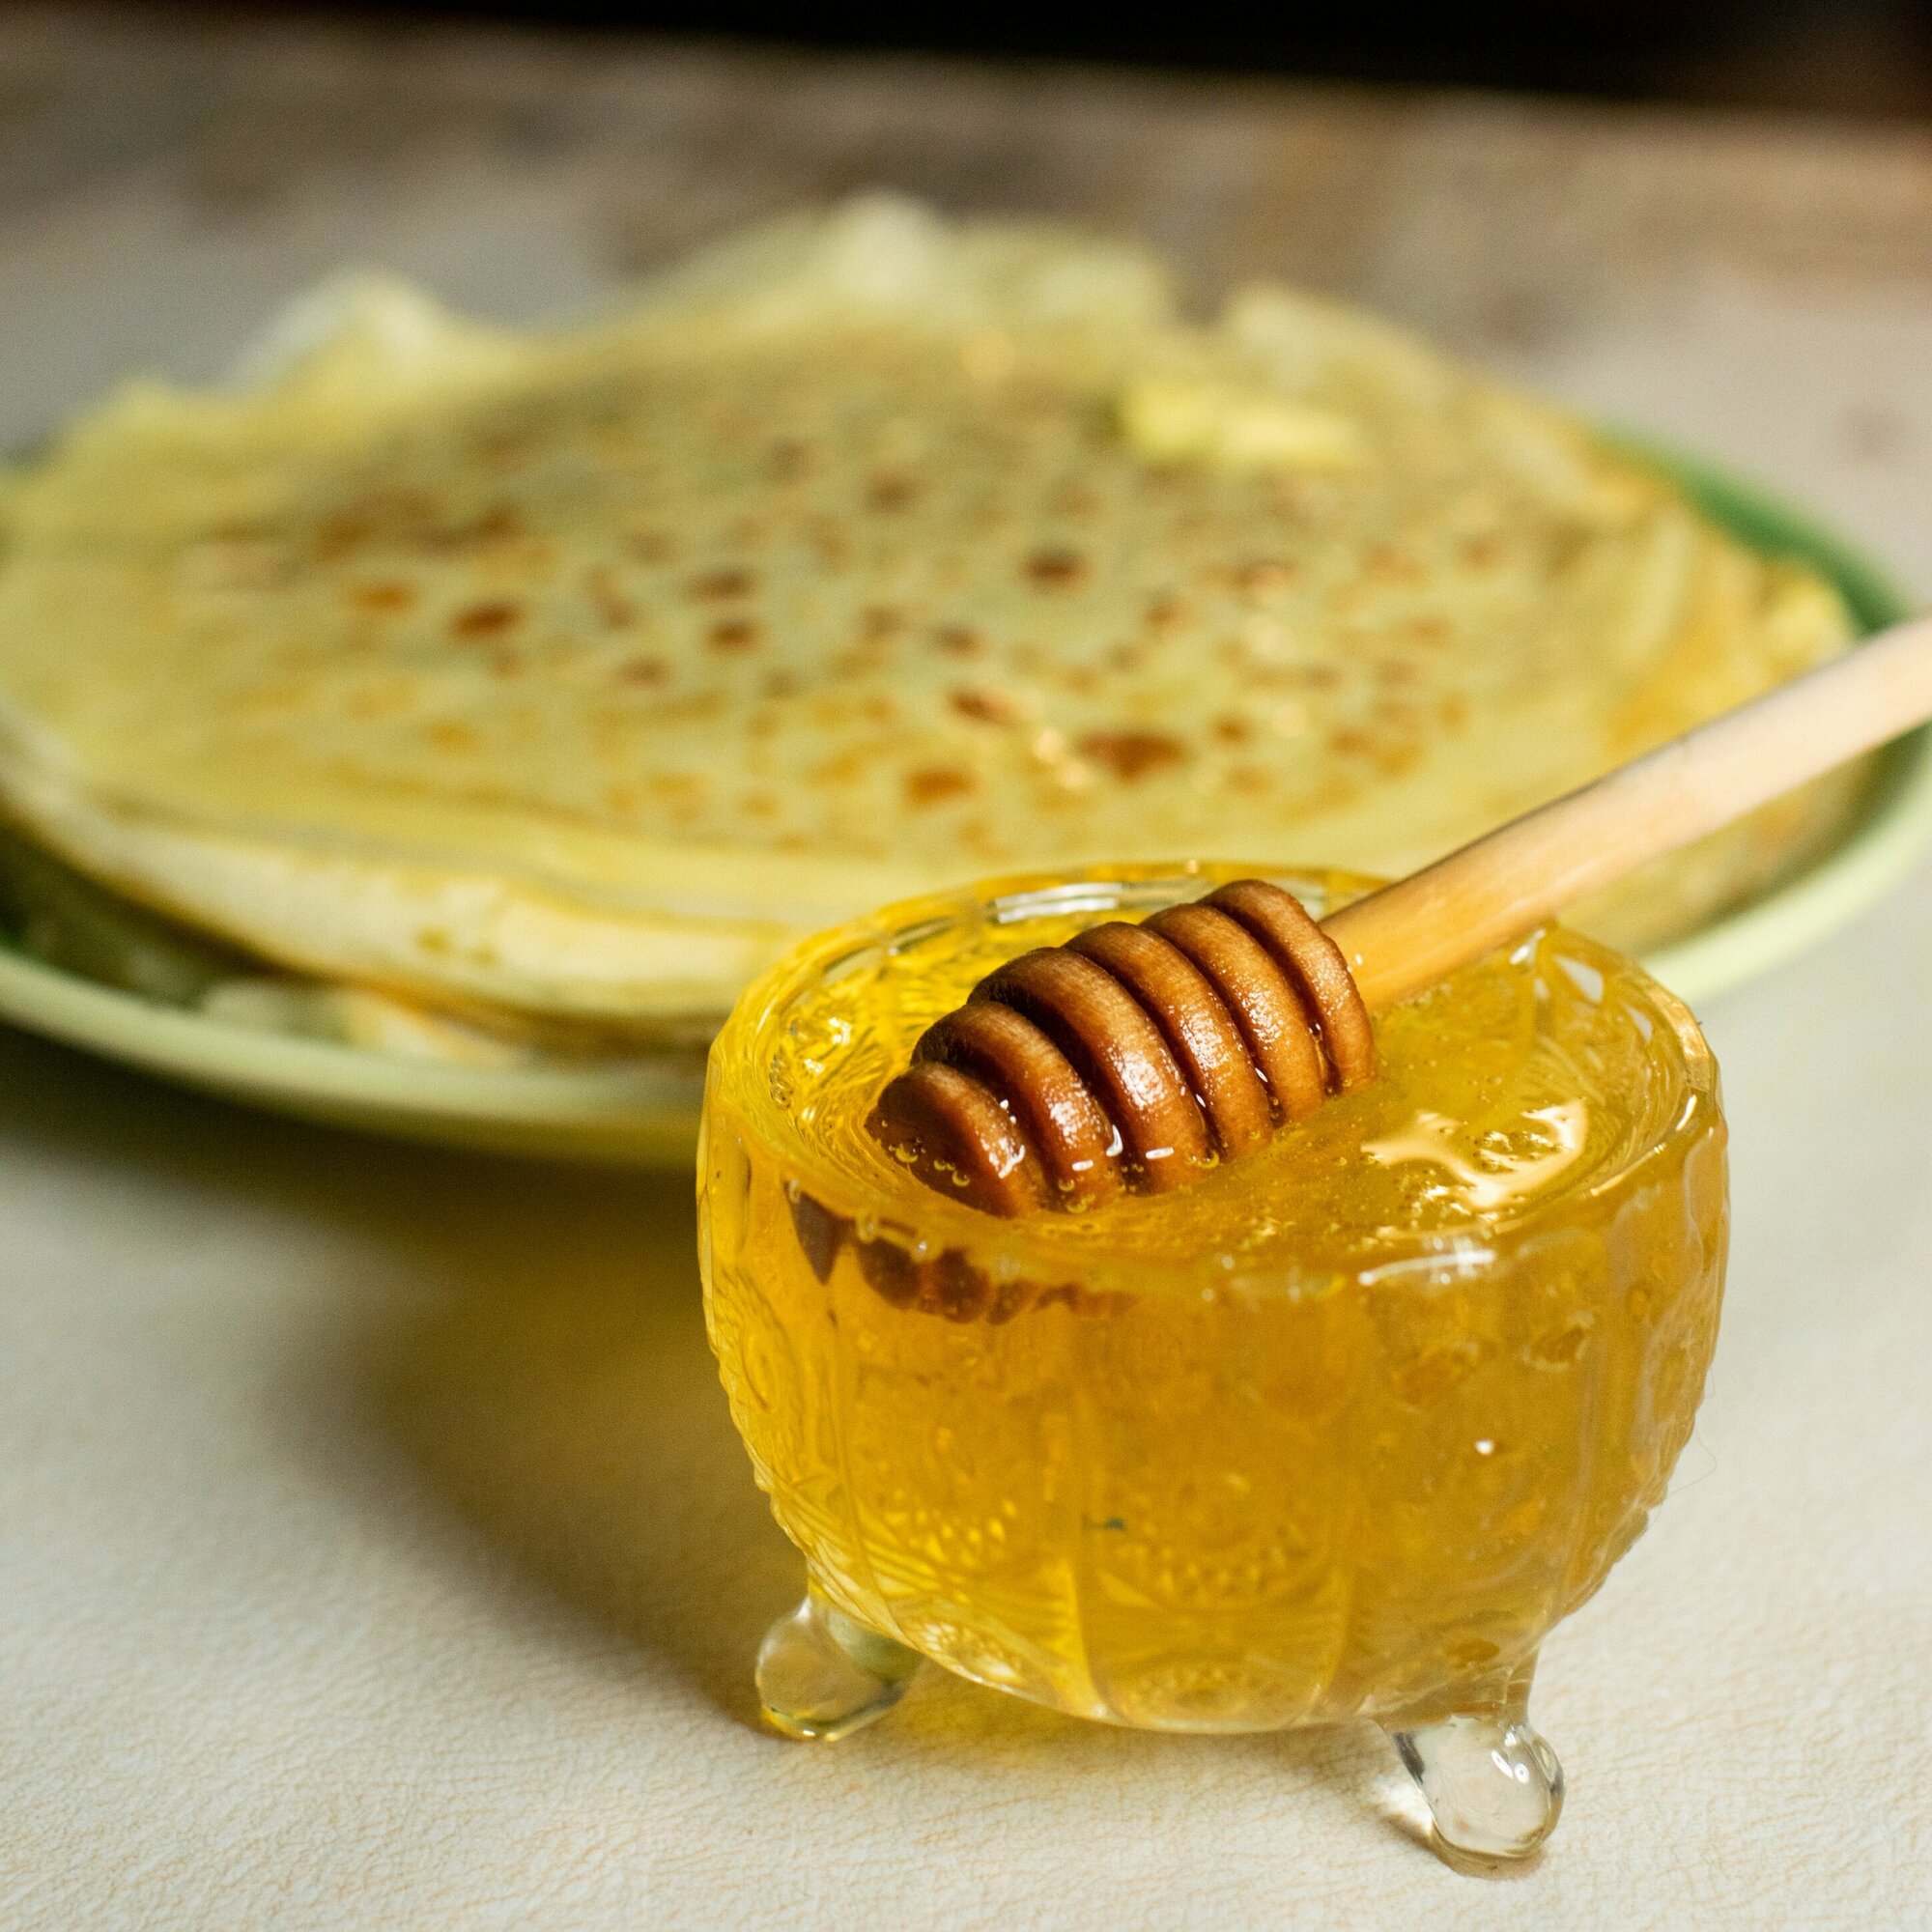 мед башкирский липовый вкусный натуральный лечебный кондитерский без сахара без нагрева фасованный для вас - фотография № 9